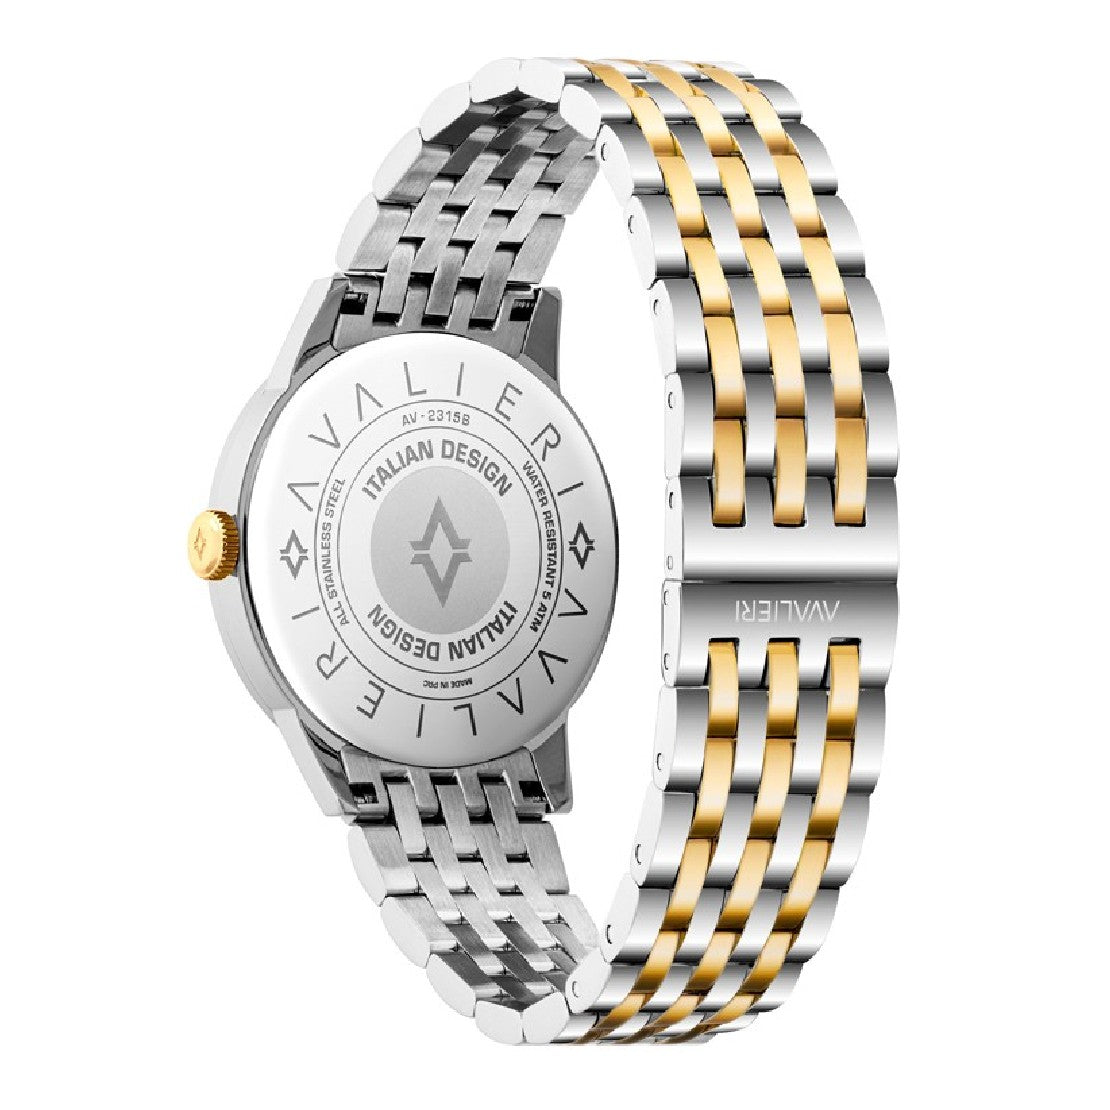 Avalieri Men's Quartz Watch Silver Dial - AV-2314B